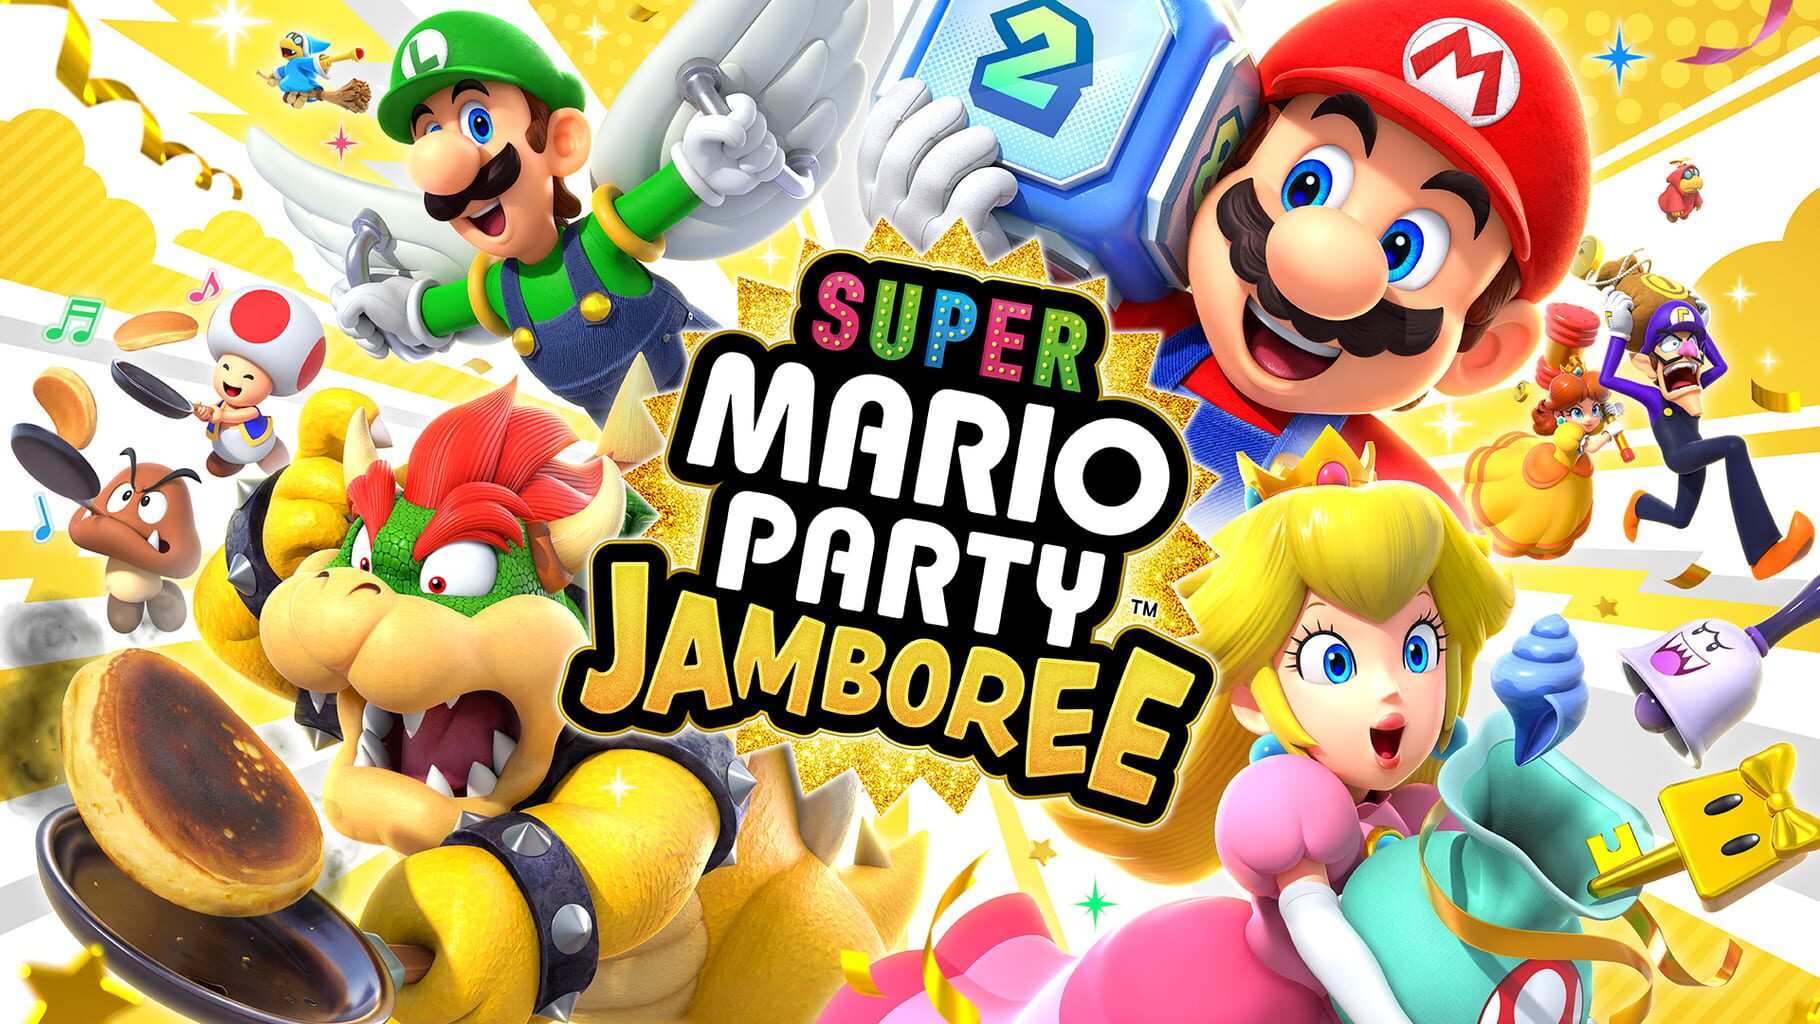 Artwork for Super Mario Party: Jamboree